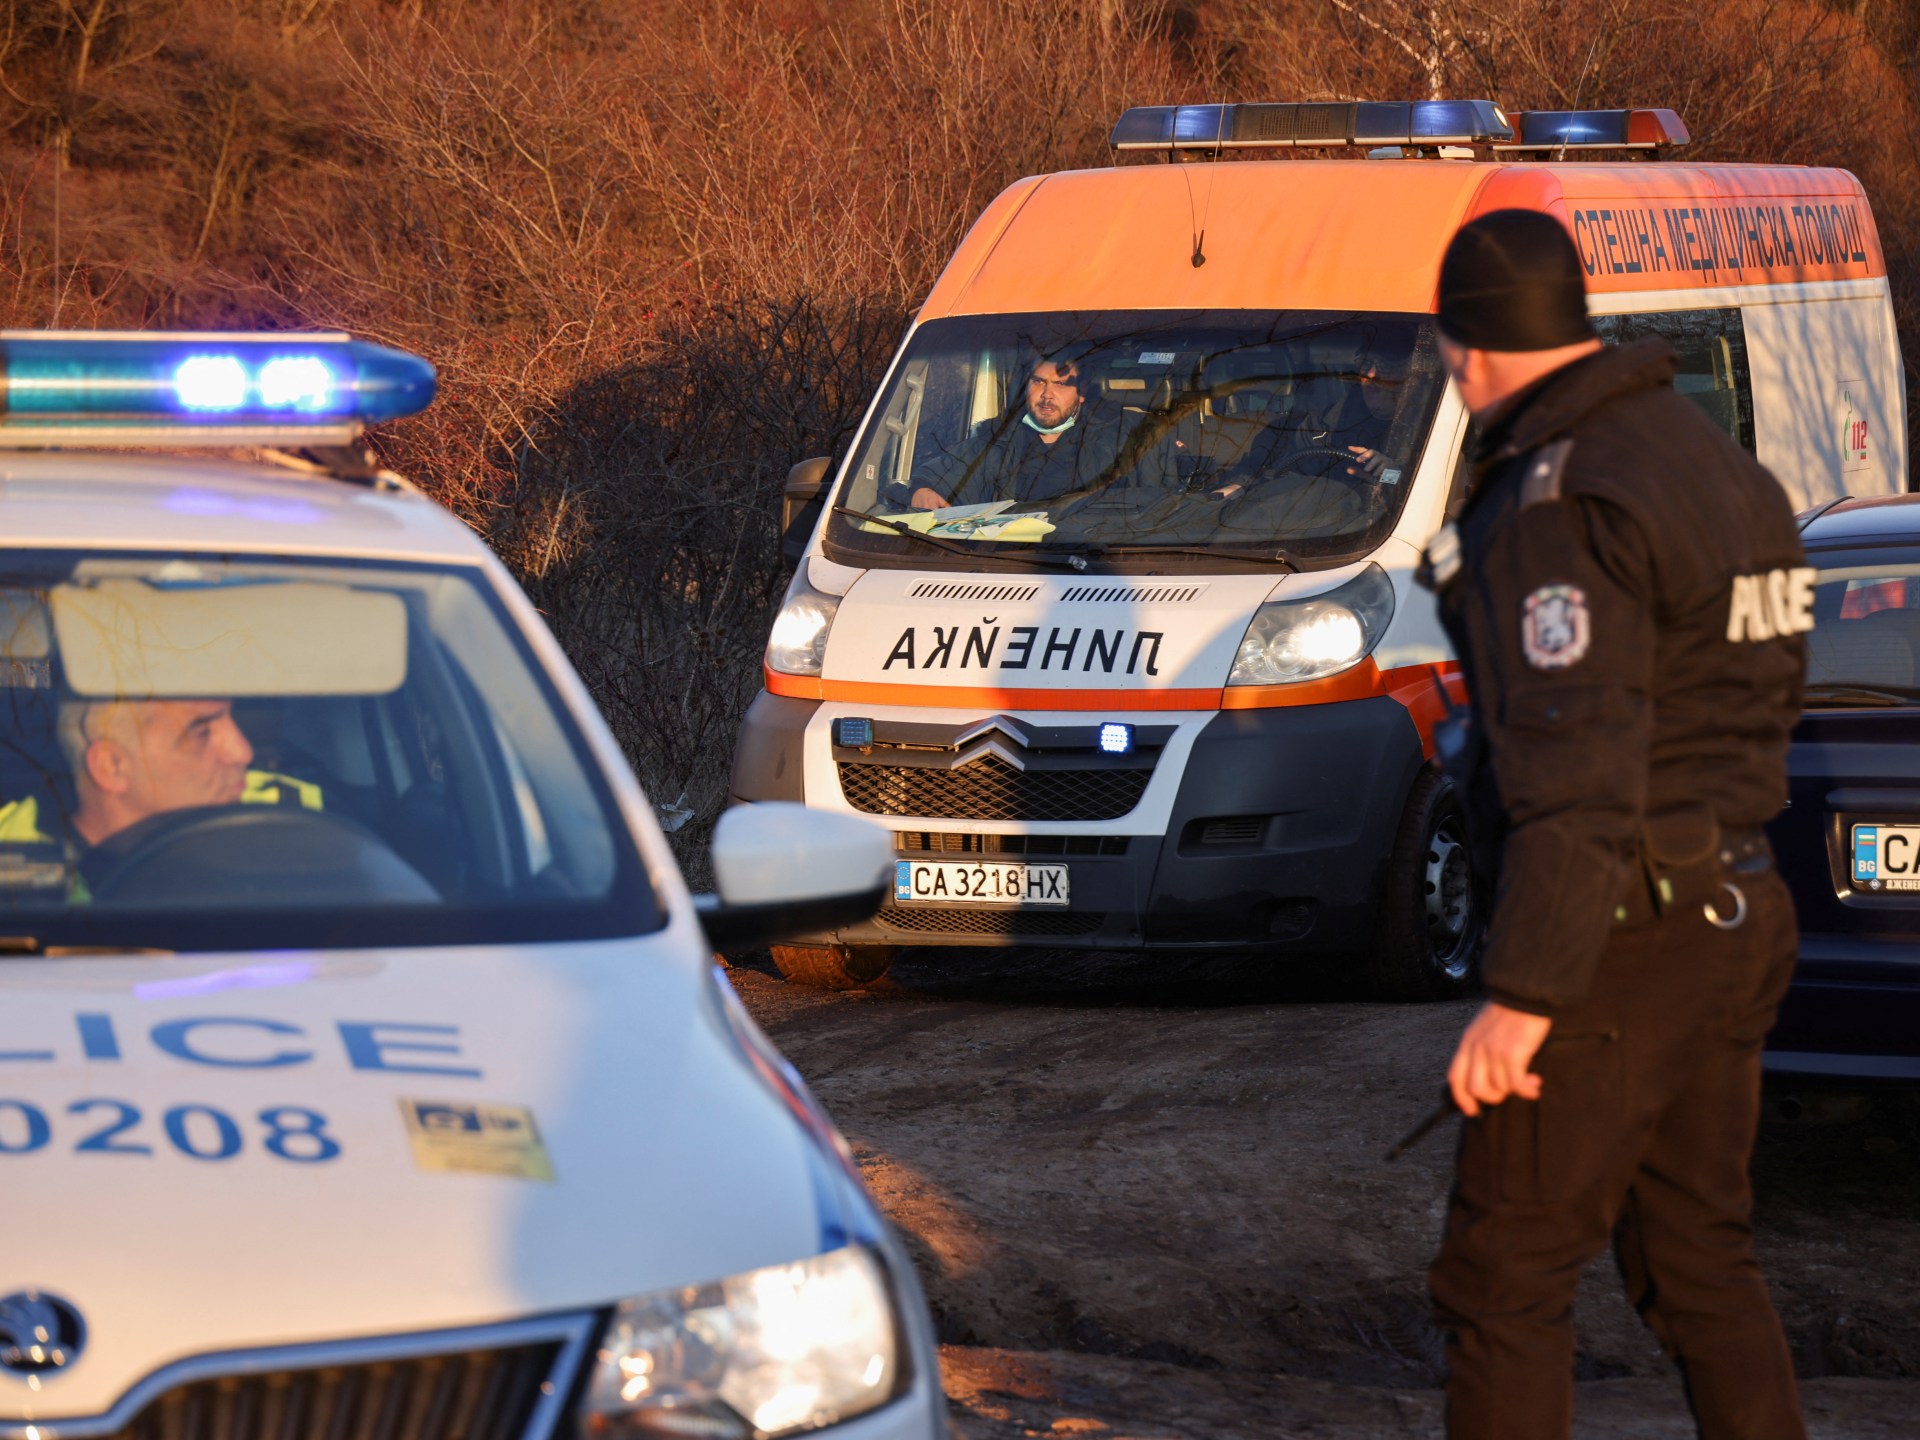 Enam didakwa setelah 18 orang ditemukan tewas dalam truk di Bulgaria |  Berita